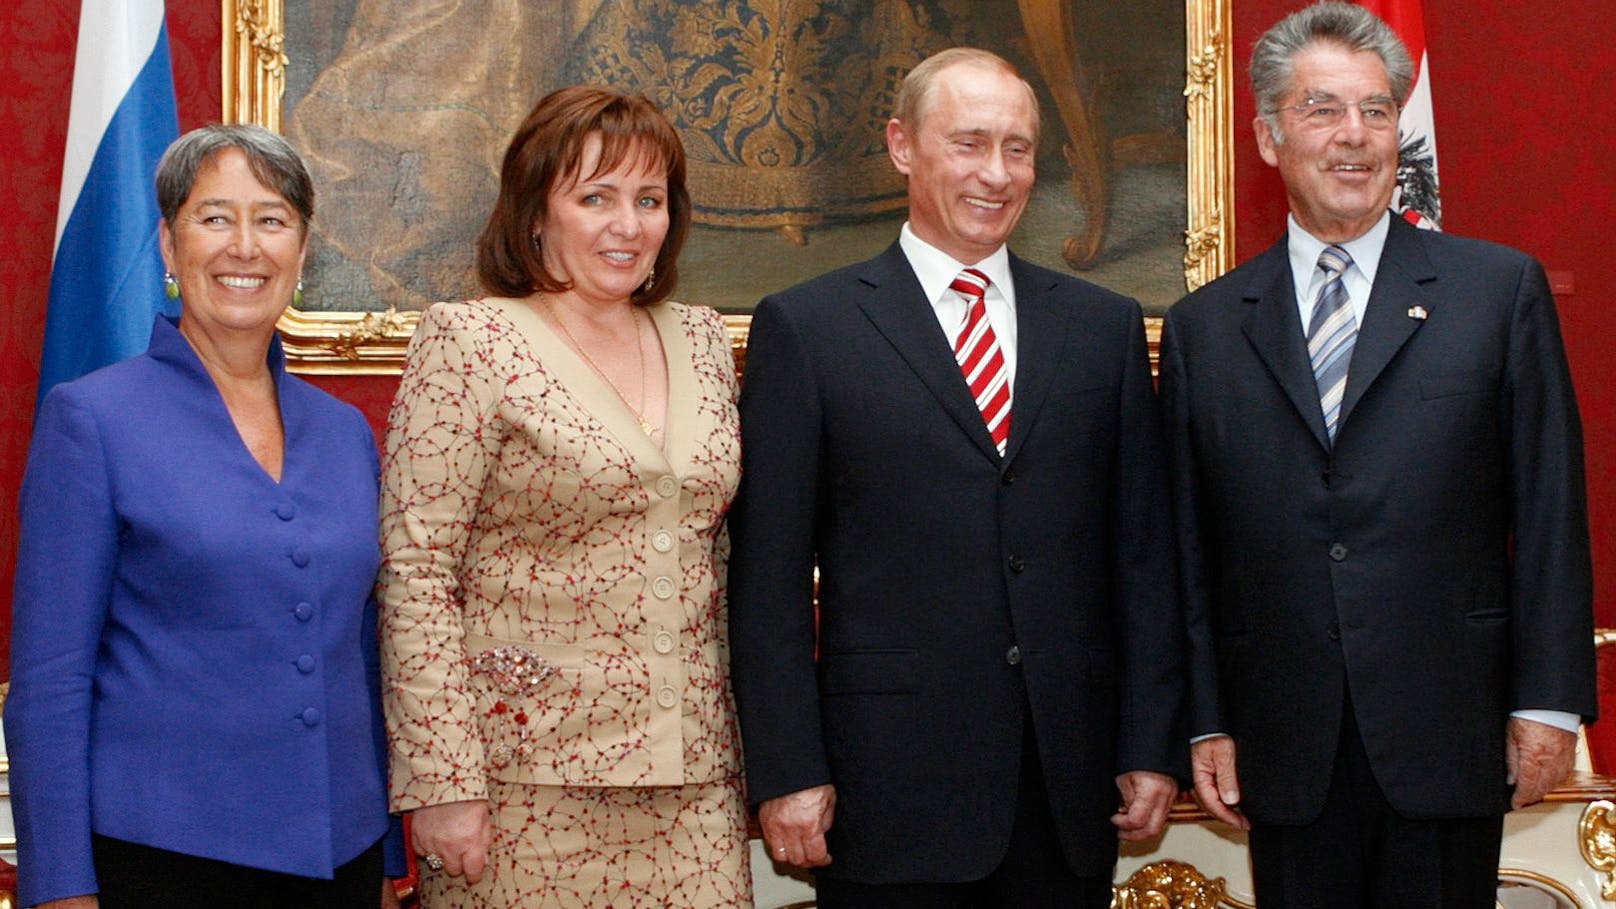 2007 waren noch andere Zeiten: <strong>Wladimir Putin</strong> mitsamt Ehefrau <strong>Ljudmila</strong>&nbsp;zwischen dem damaligen Bundespräsidenten <strong>Heinz Fischer</strong> und dessen Ehefrau <strong>Margit</strong> (beide außen) während eines Staatsbesuchs in der Wiener Hofburg.